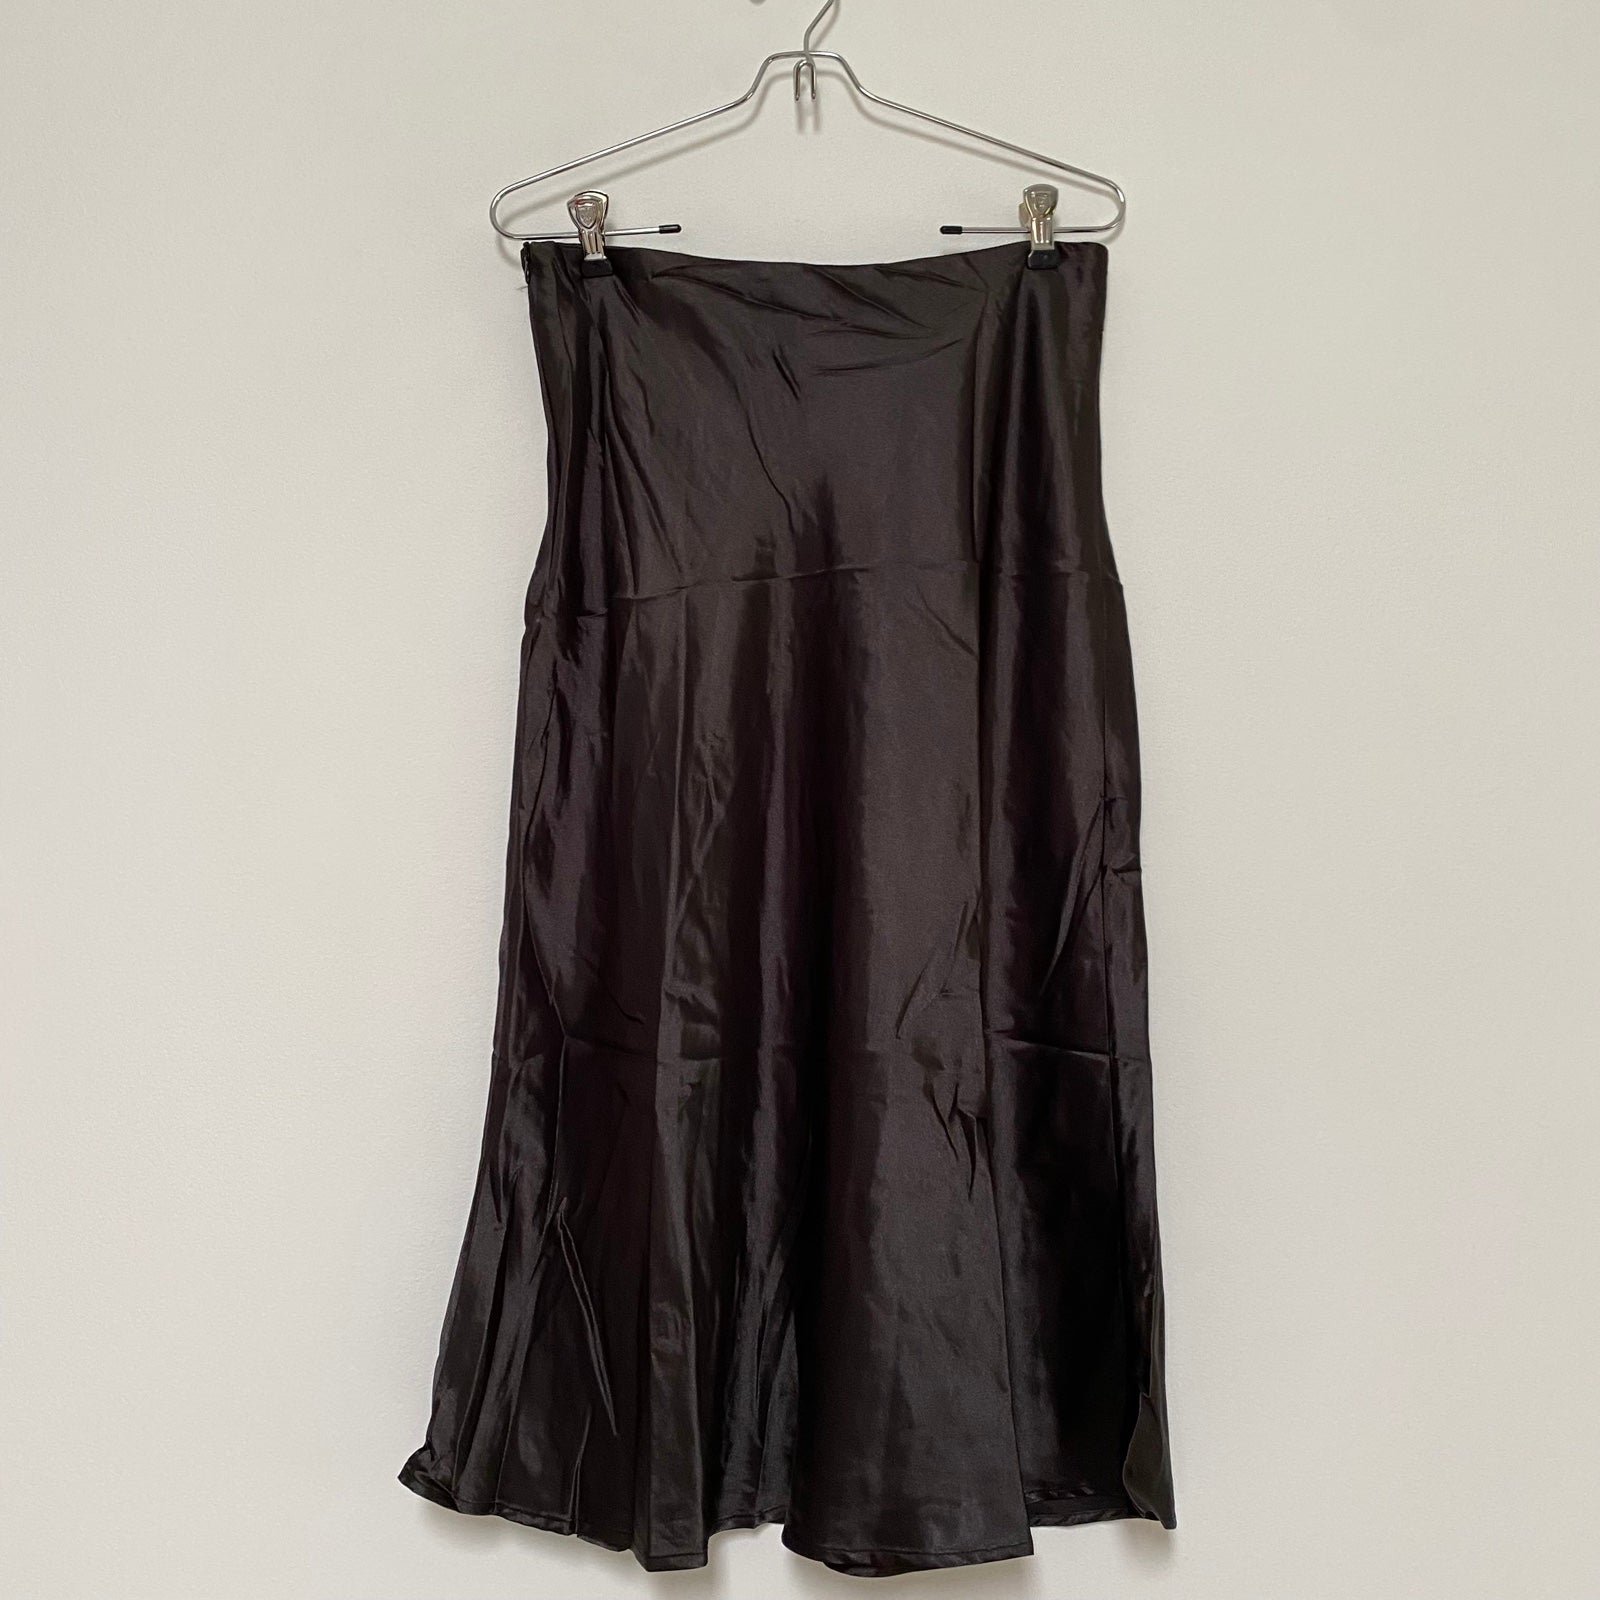 floor price Midi Slip Skirt Size Medium Black NWOT OH1N